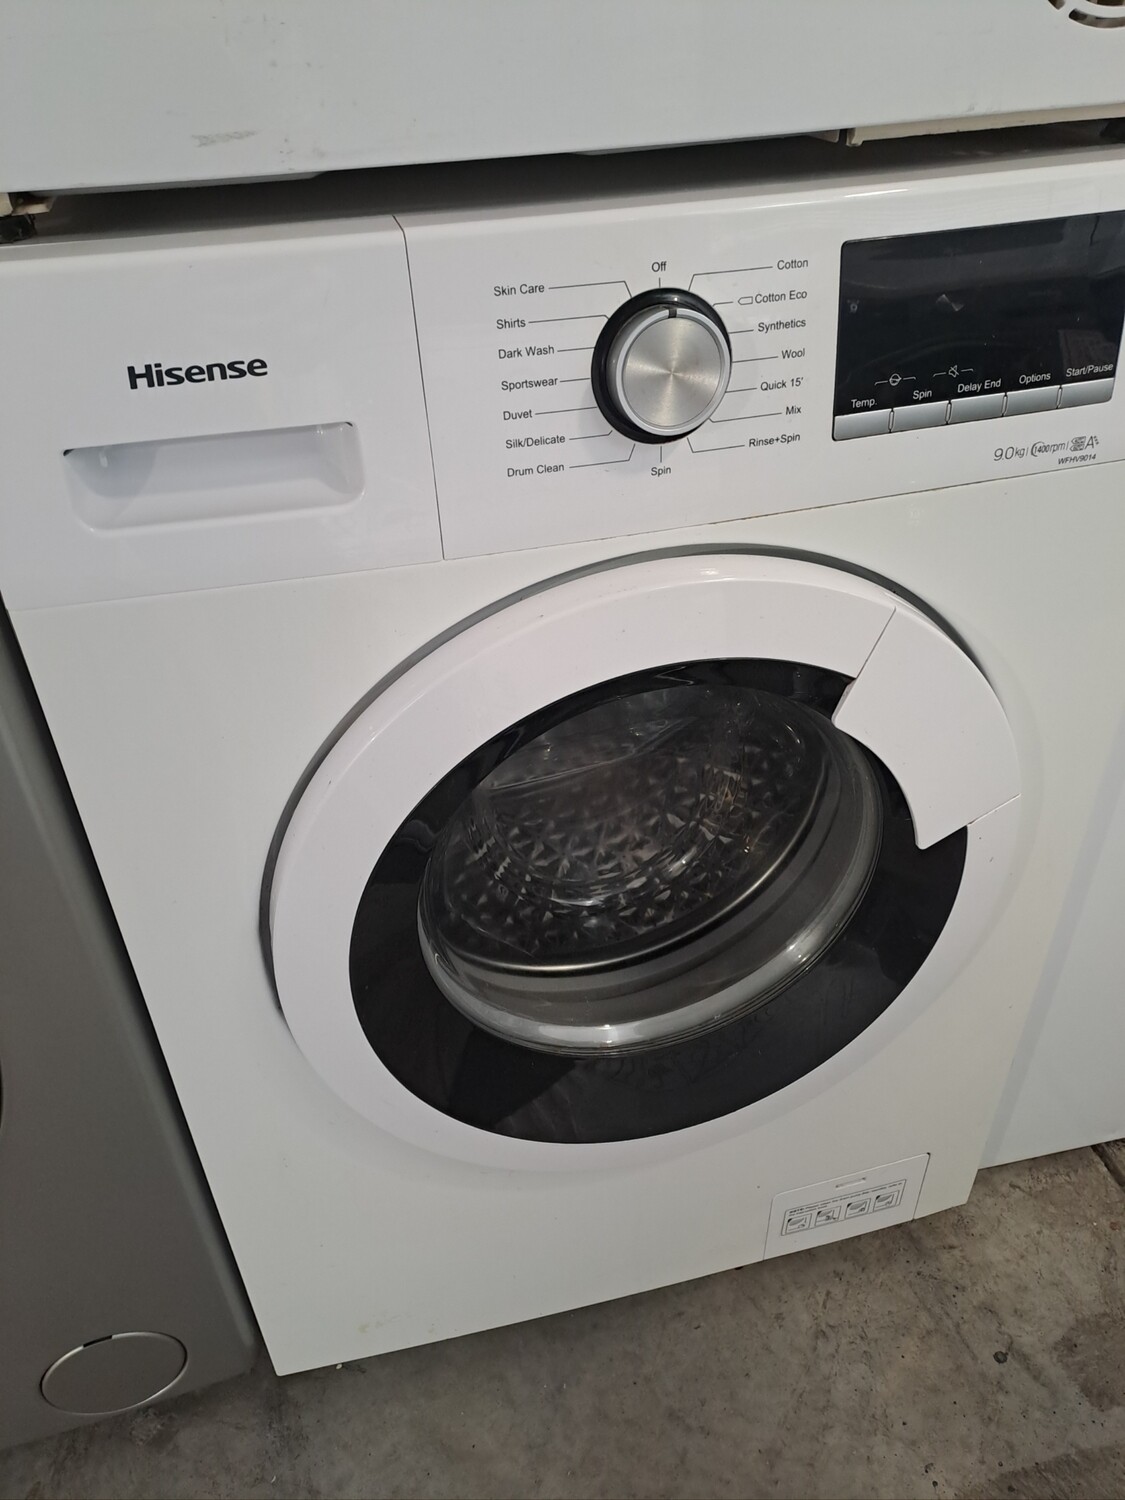 Hisense WFHV9014 9kg Load, A+++ 1400 Spin Washing Machine - White - Refurbished - 6 Month Guarantee